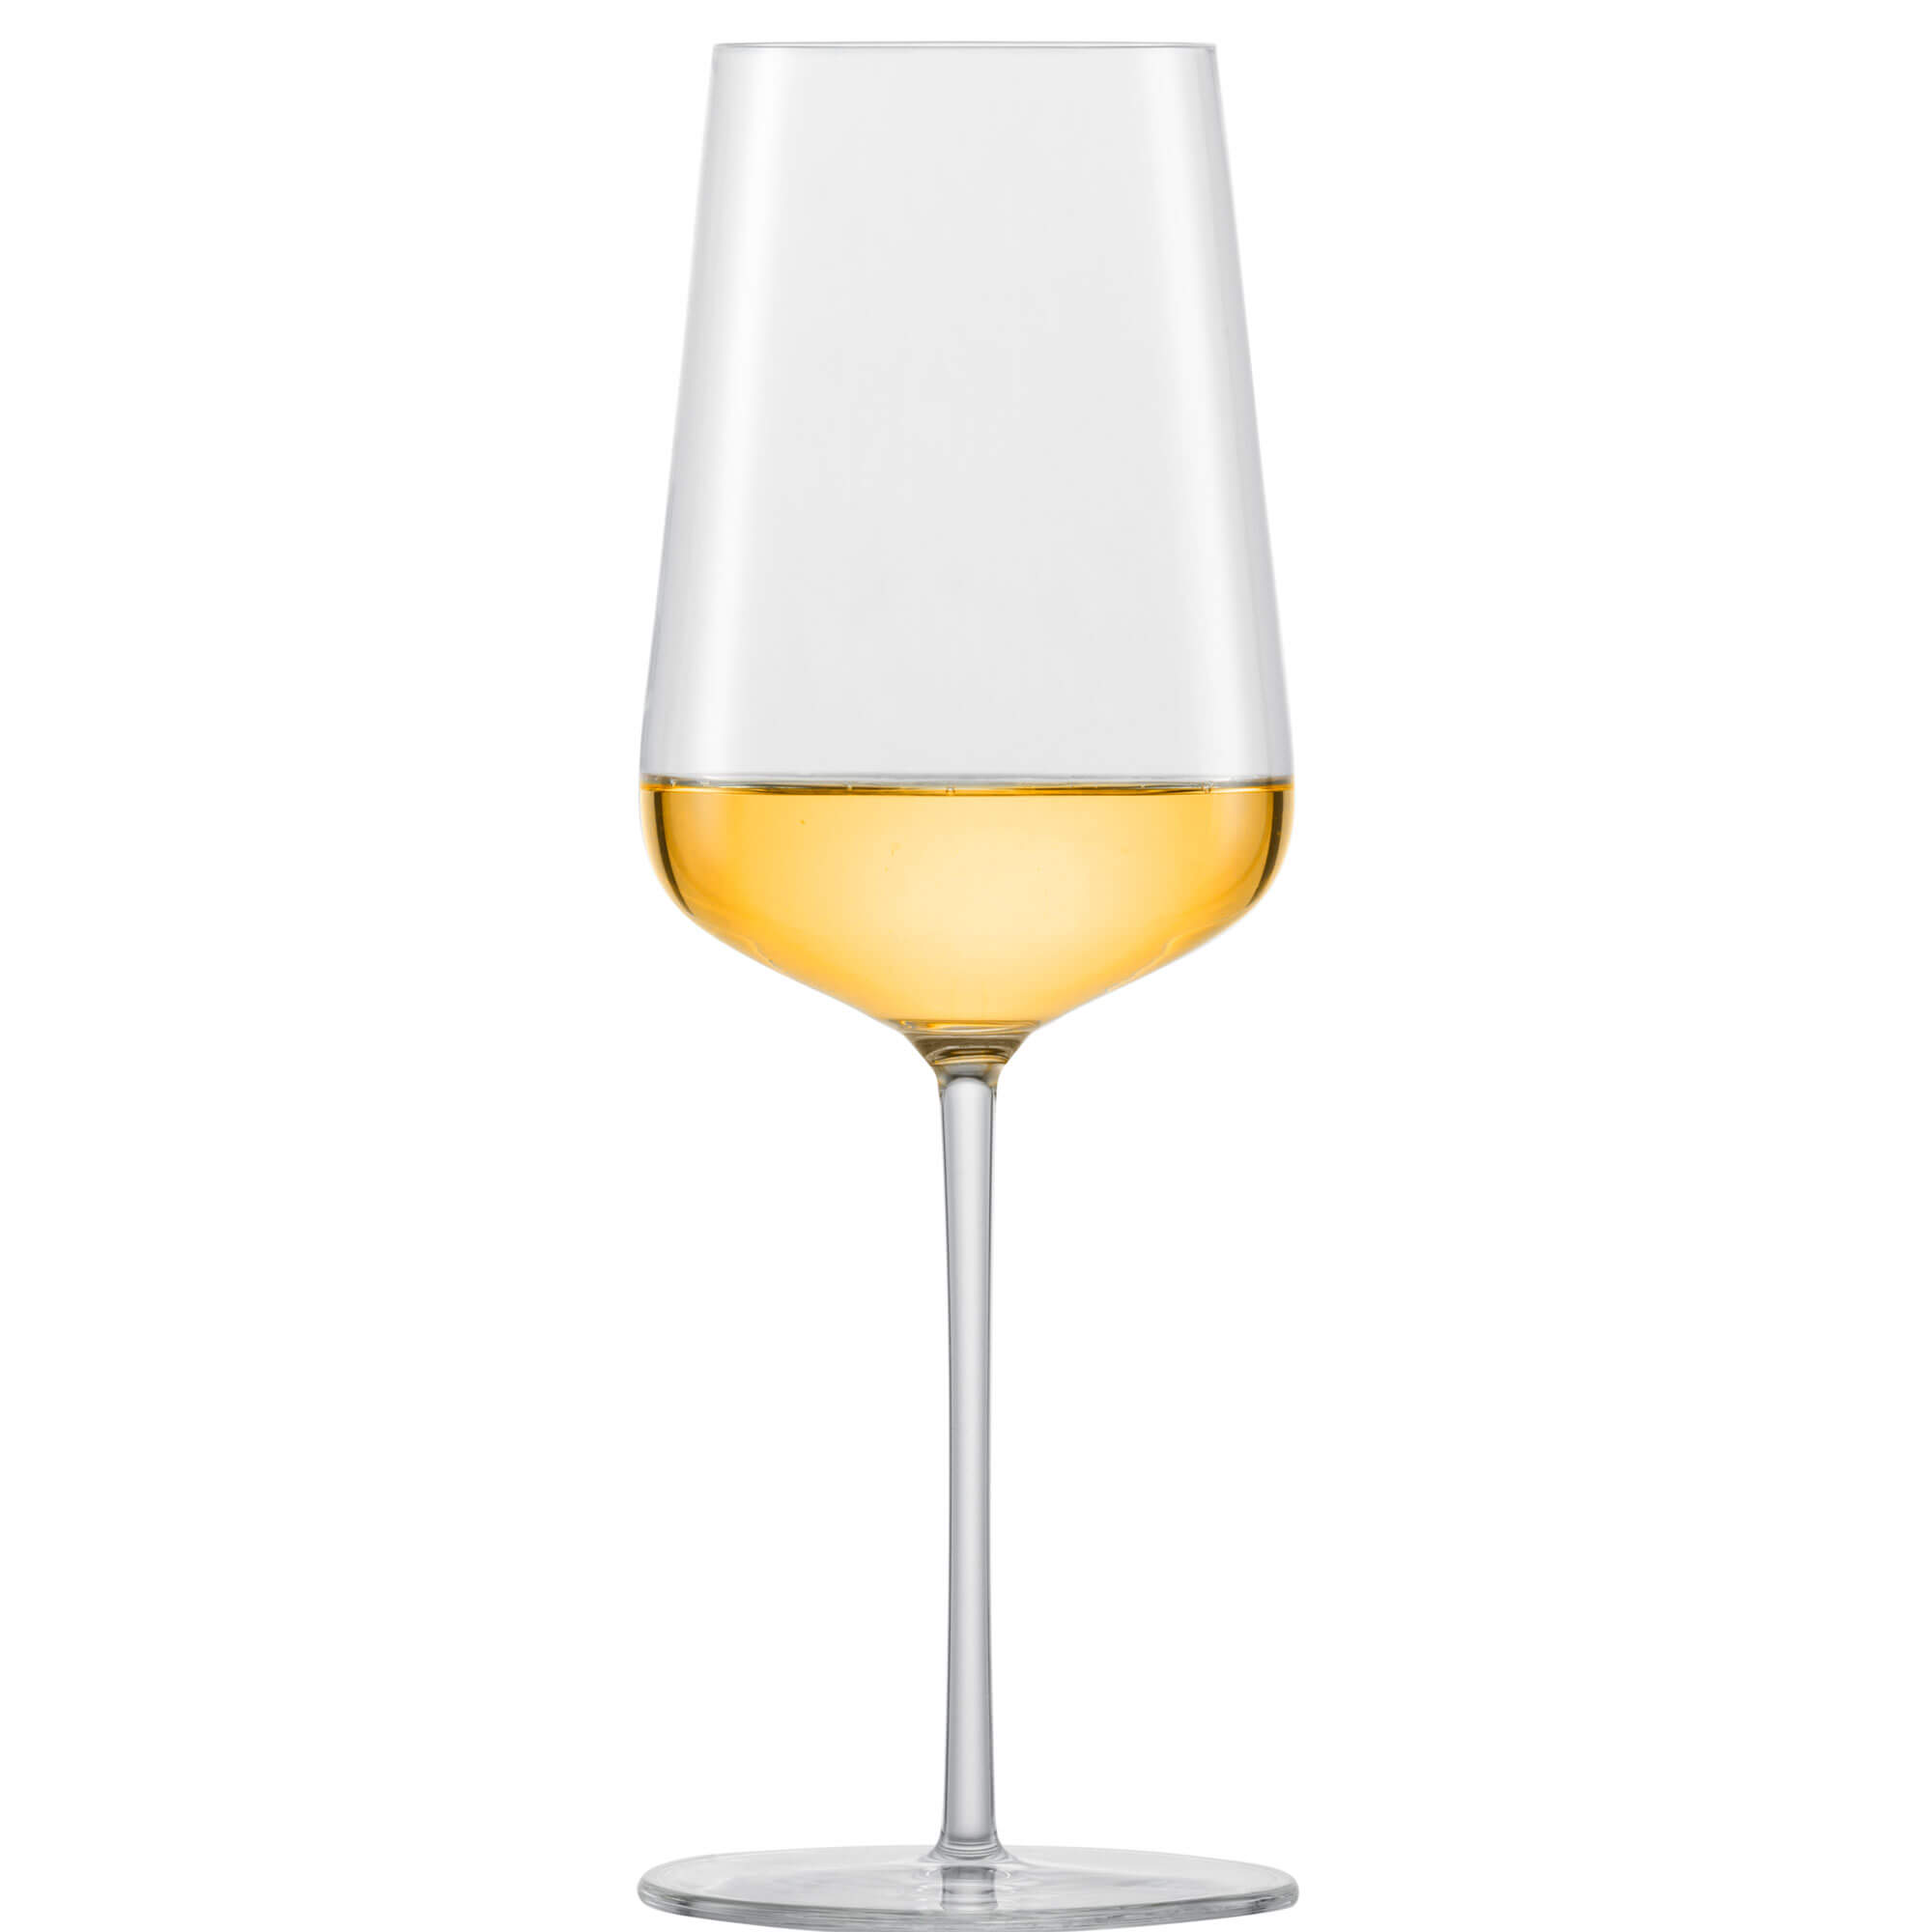 Chardonnayglas Verbelle, Zwiesel Glas - 487ml (1 Stk.)